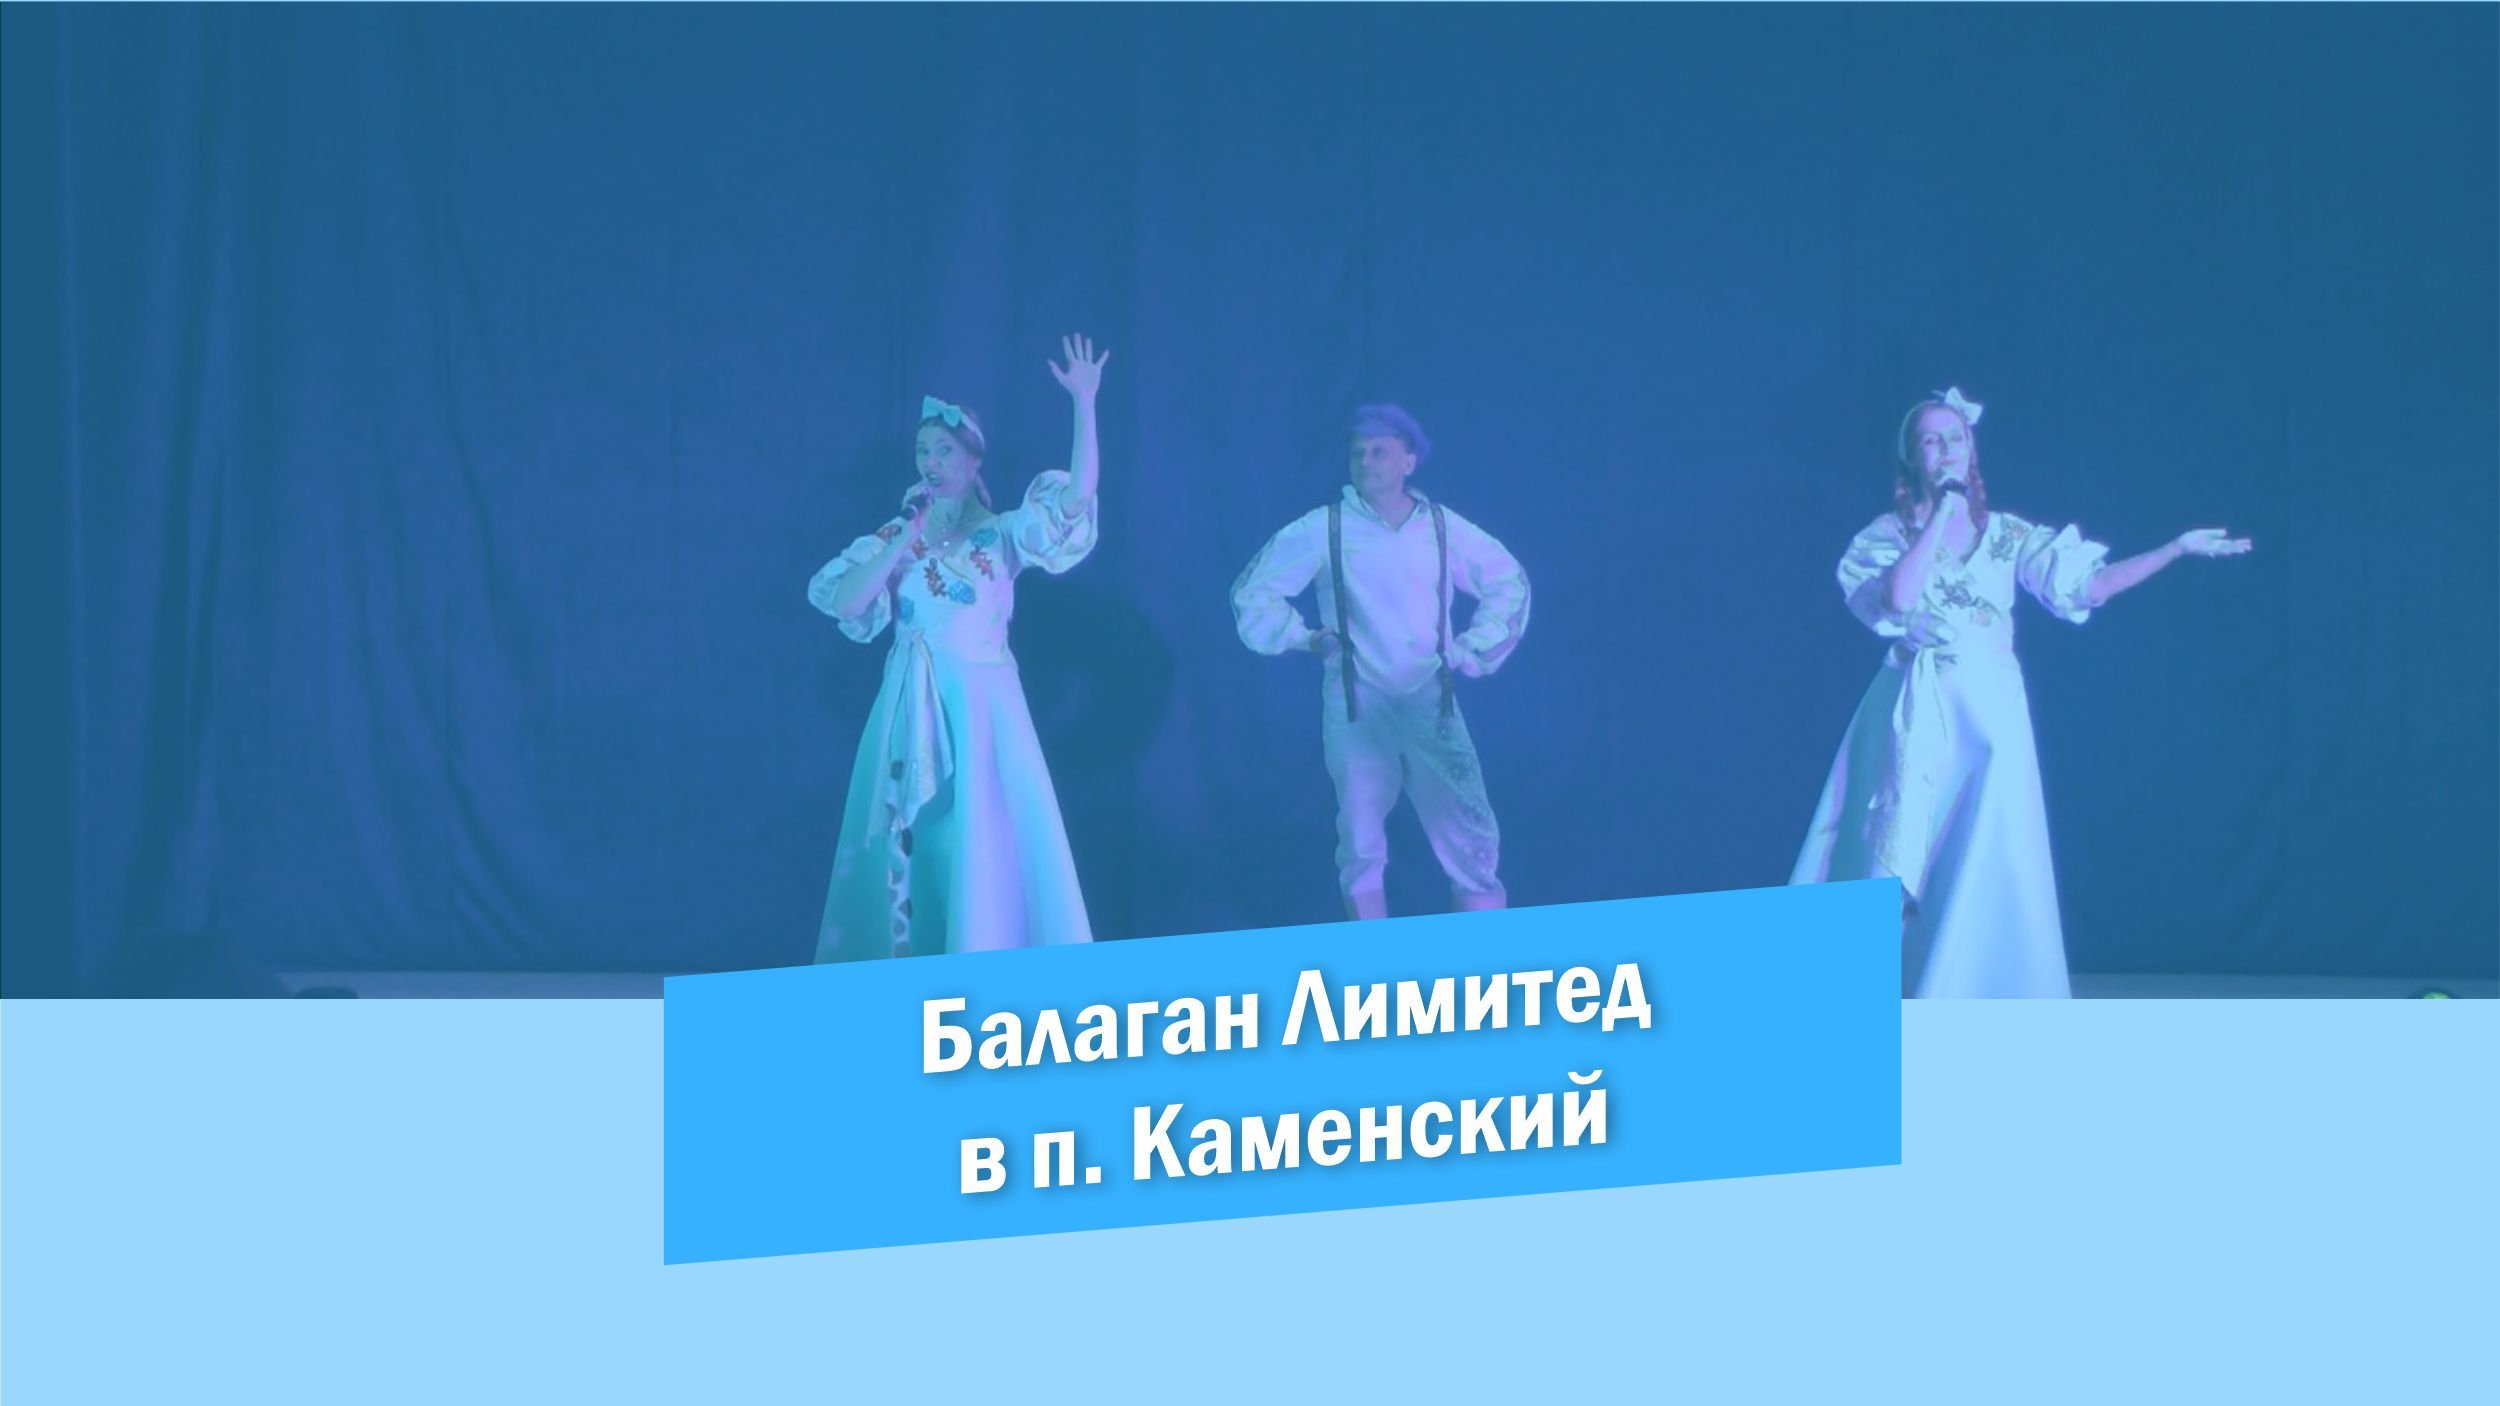 Балаган Лимитед. Балаган Лимитед - 2006 - Welcome to Russia. Выступление групп в России. Балаган Лимитед с раною в груди.